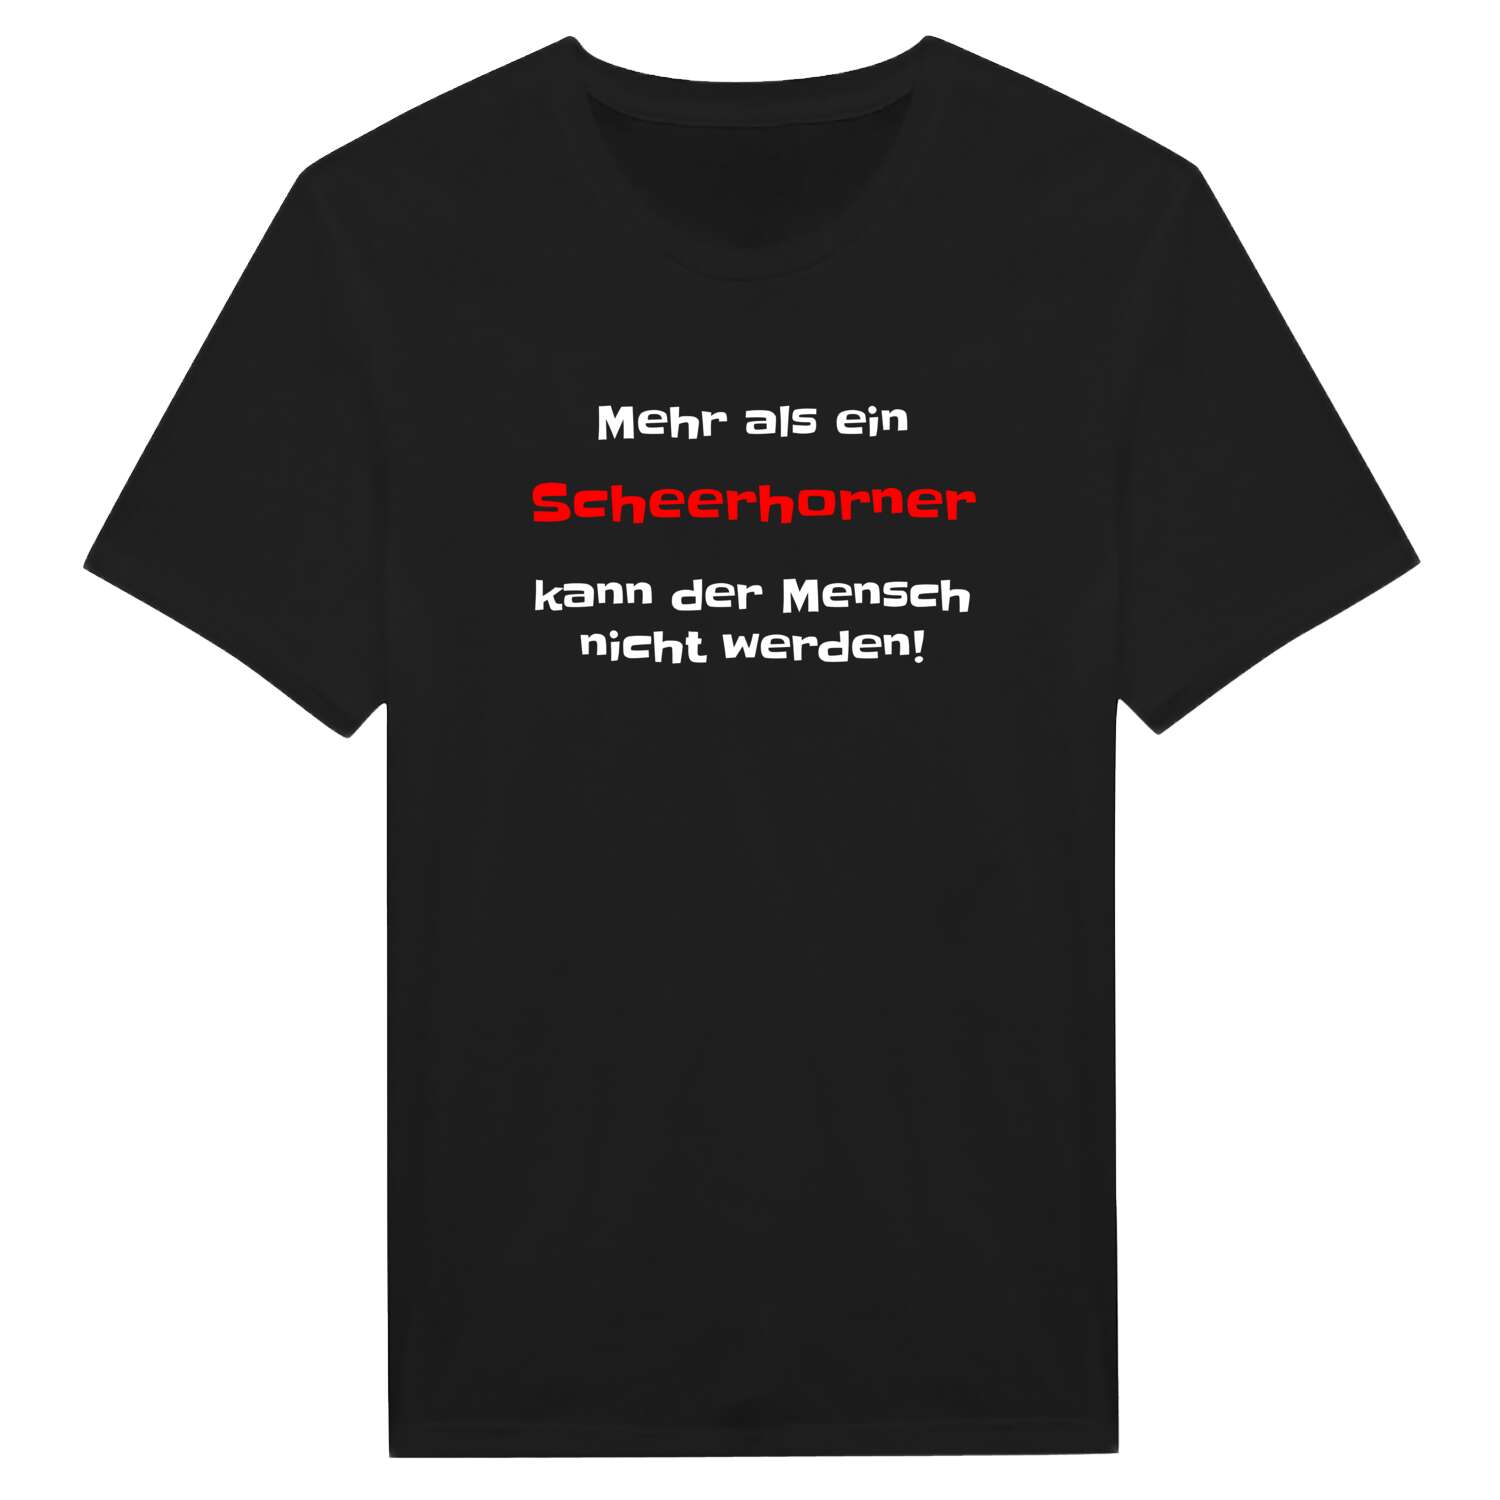 Scheerhorn T-Shirt »Mehr als ein«